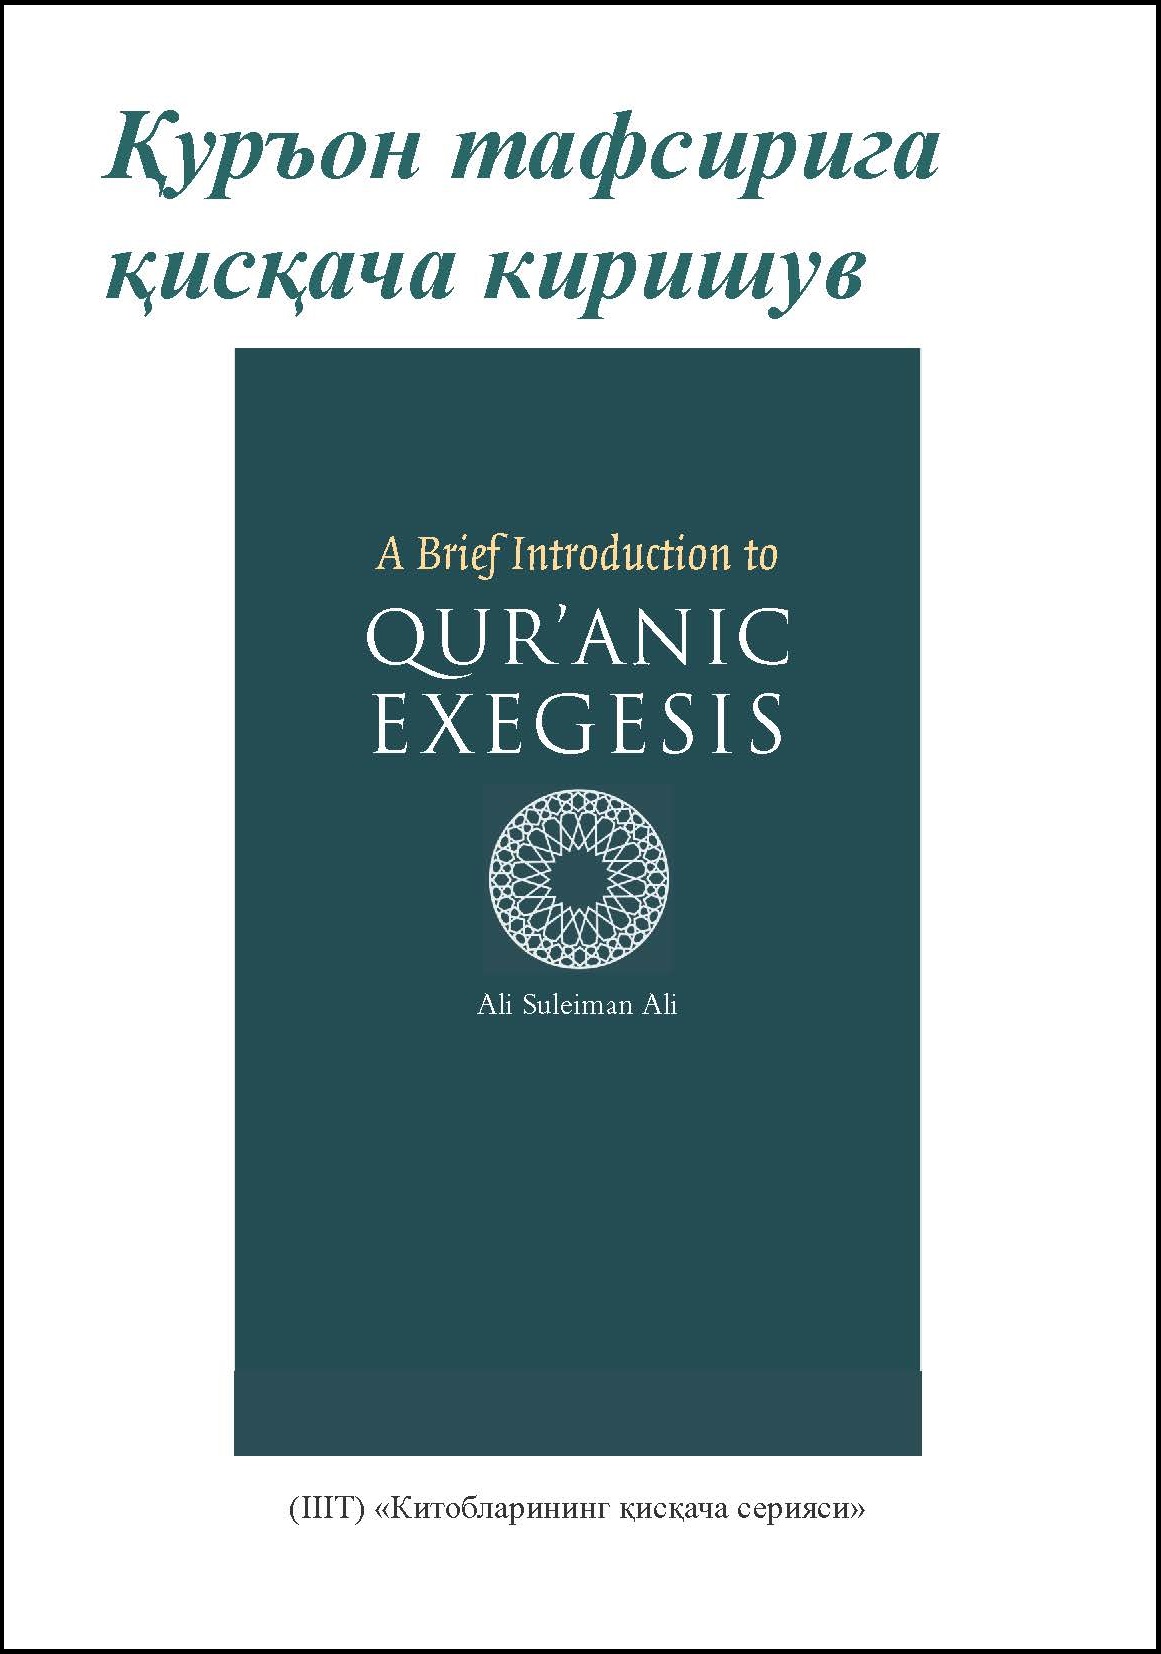 Uzbek: Китобларининг қисқача сериялари: Қуръон тафсирига қисқача киришув (Book-in-Brief: A Brief Introduction to Qur’anic Exegesis)